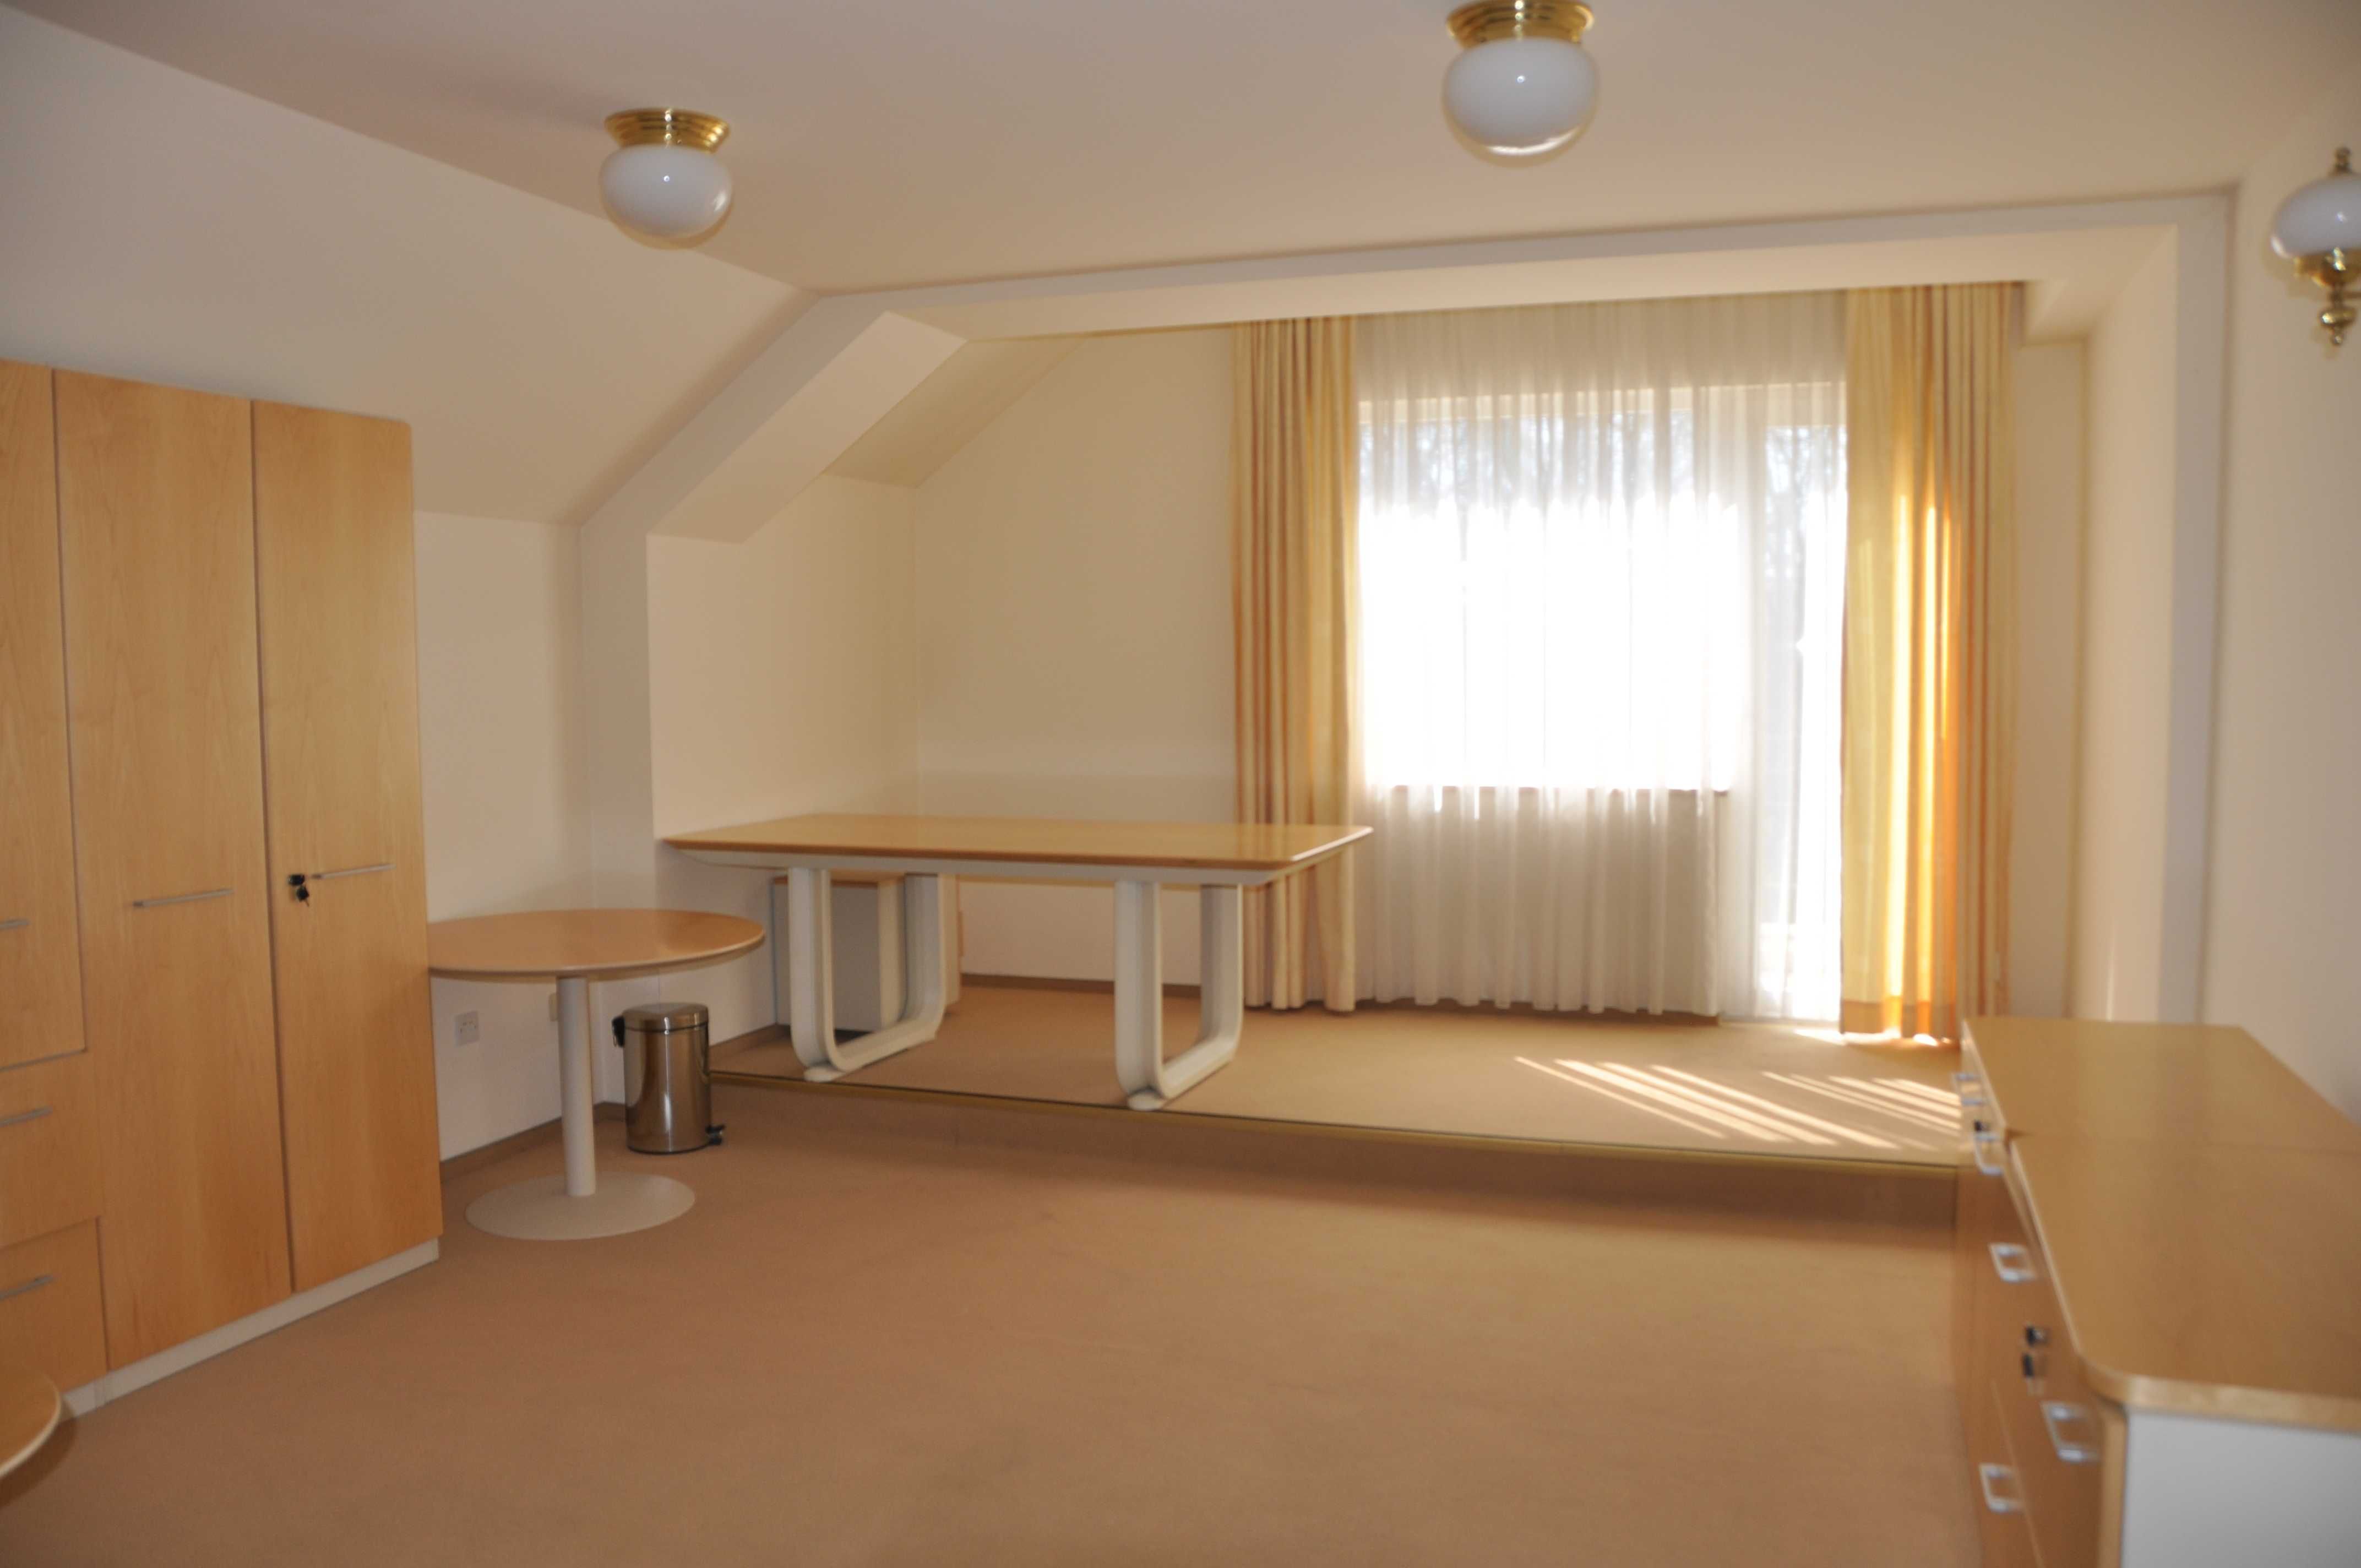 Închiriem birouri mobilate în Oradea, utilități incluse în preț